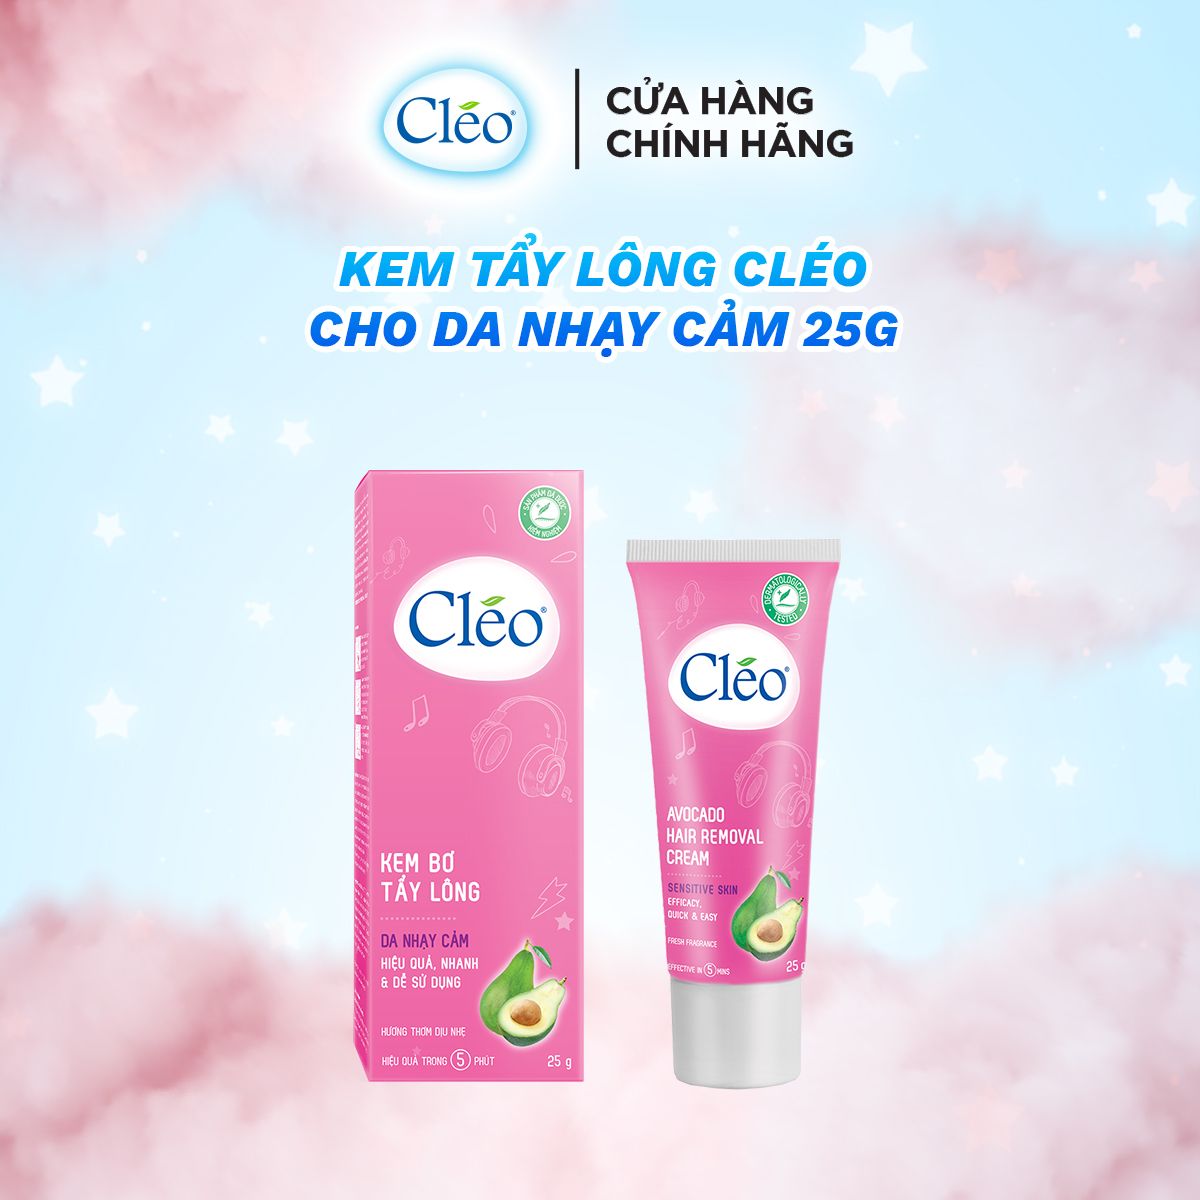  Kem tẩy lông Cleo da nhạy cảm 25g 